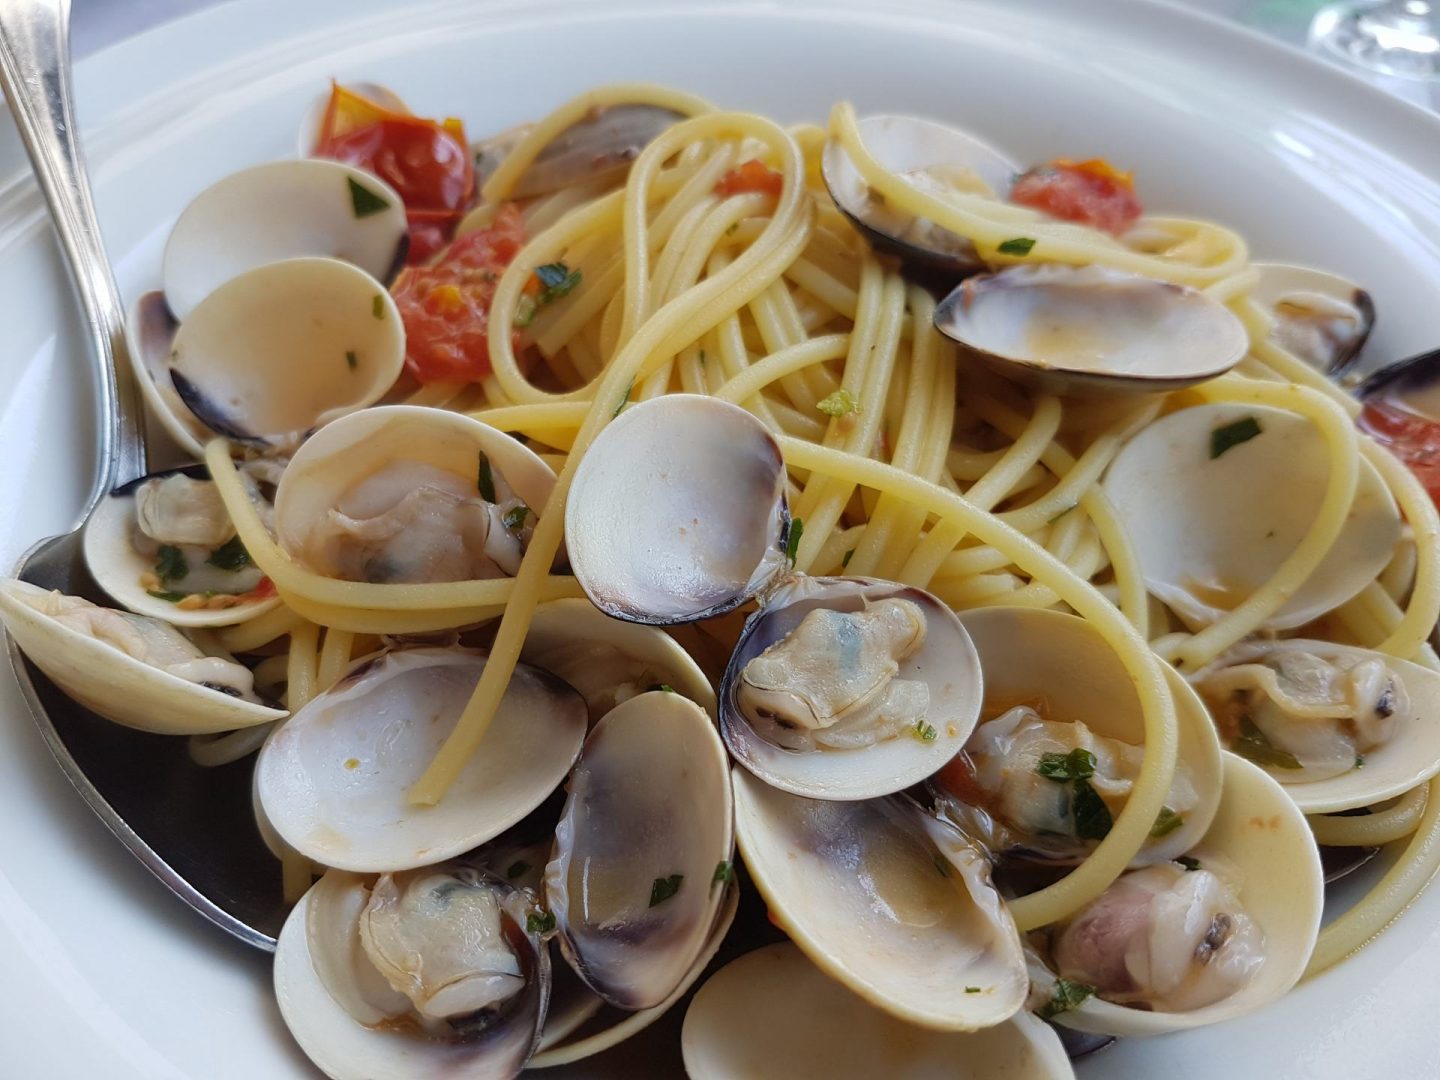 Erfahrung Bewertung Kritik Restaurant Hotel Malcesine Spaghetti Vongole Foodblog Sternestulle